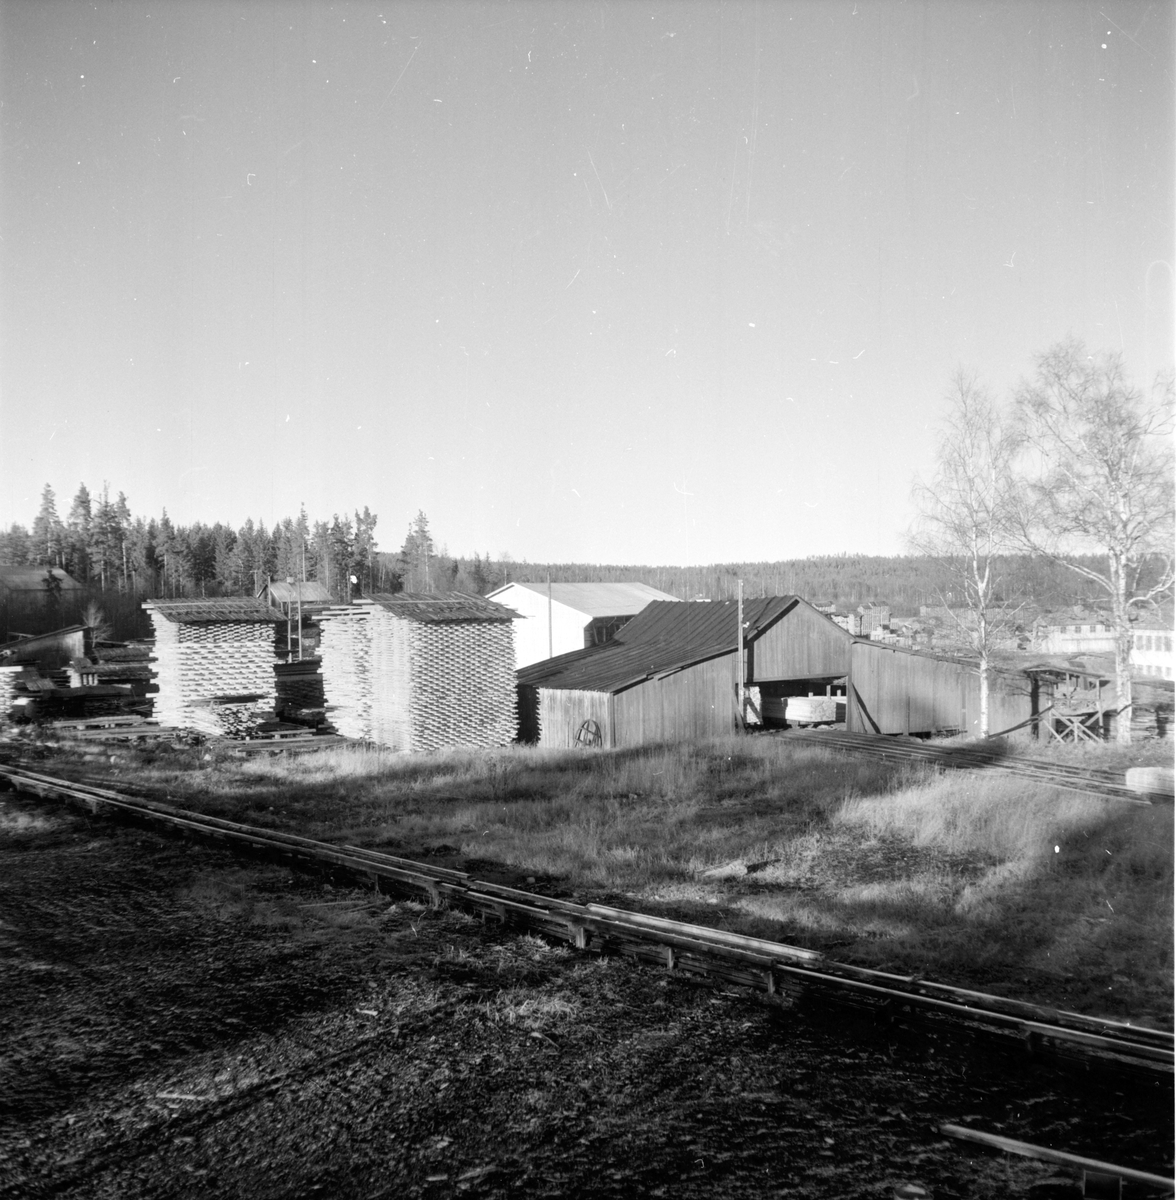 Lingbo, Skog,
Finnés,
November 1959